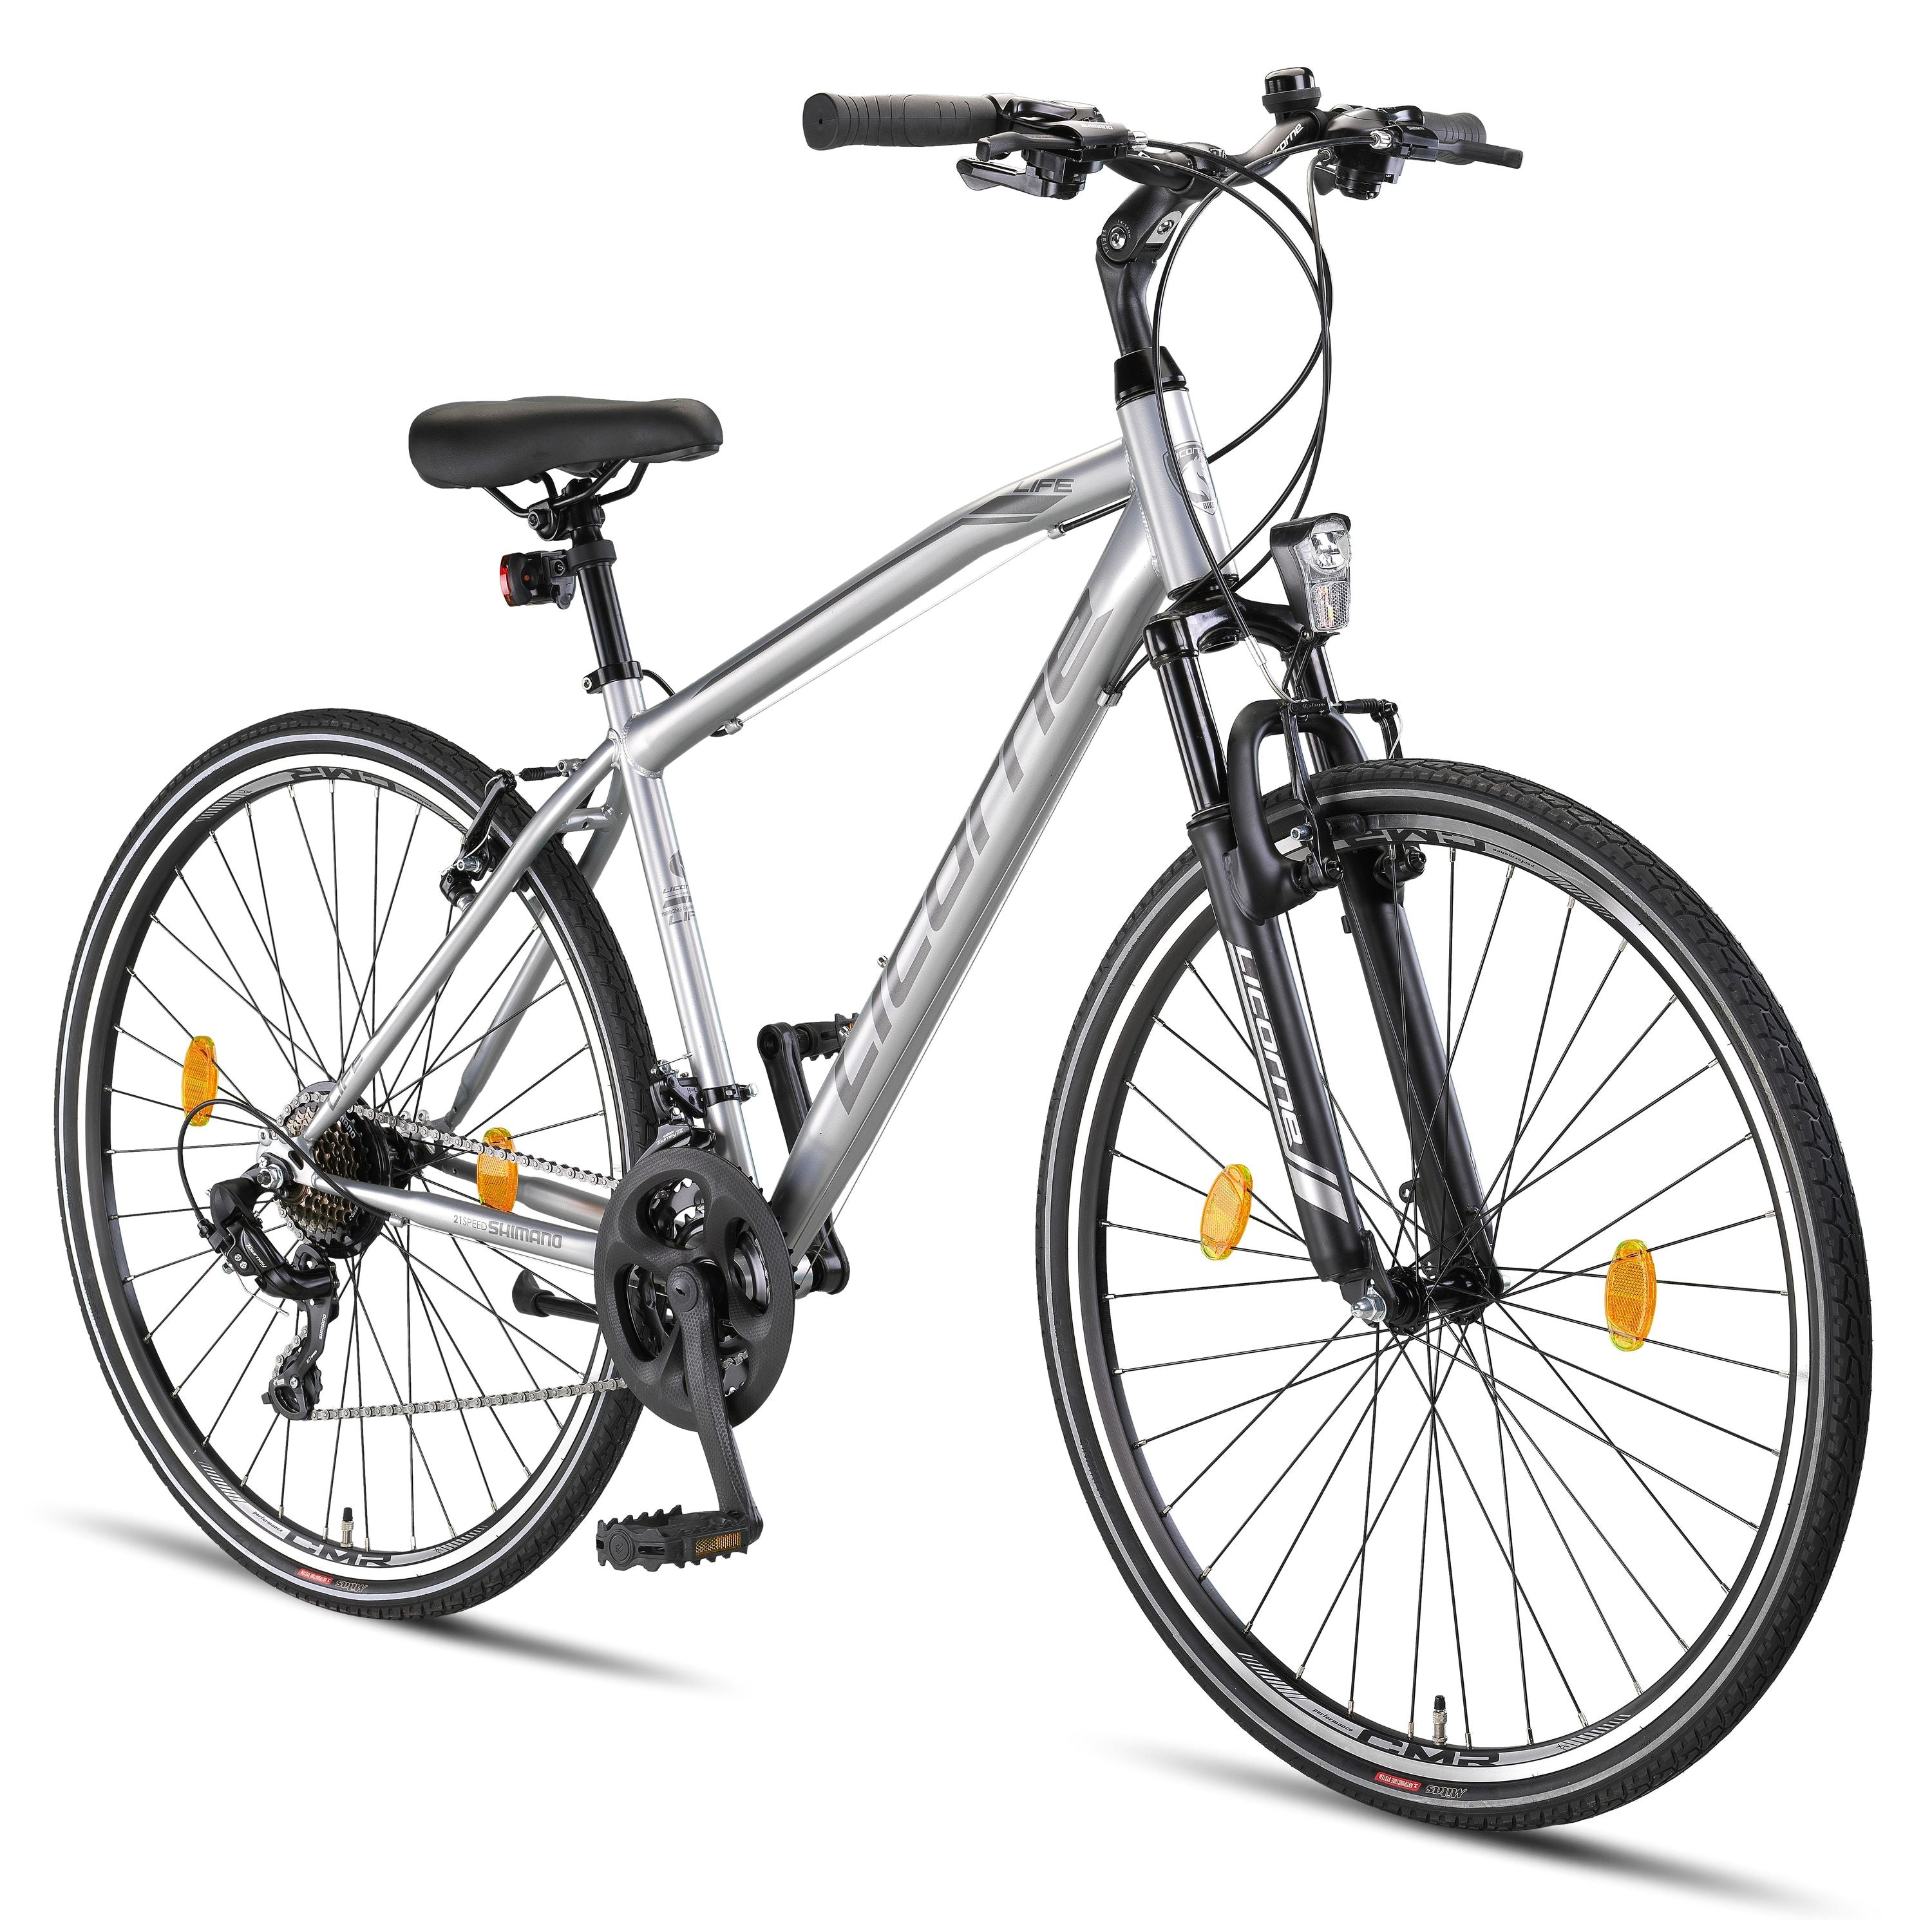 Licorne Bike Life M-V Premium Trekking Bike en 28 pulgadas - Bicicleta para niños, niñas, señoras y hombres - Cambio de velocidades Shimano 21 - Bicicleta para hombres - Bicicleta para niños